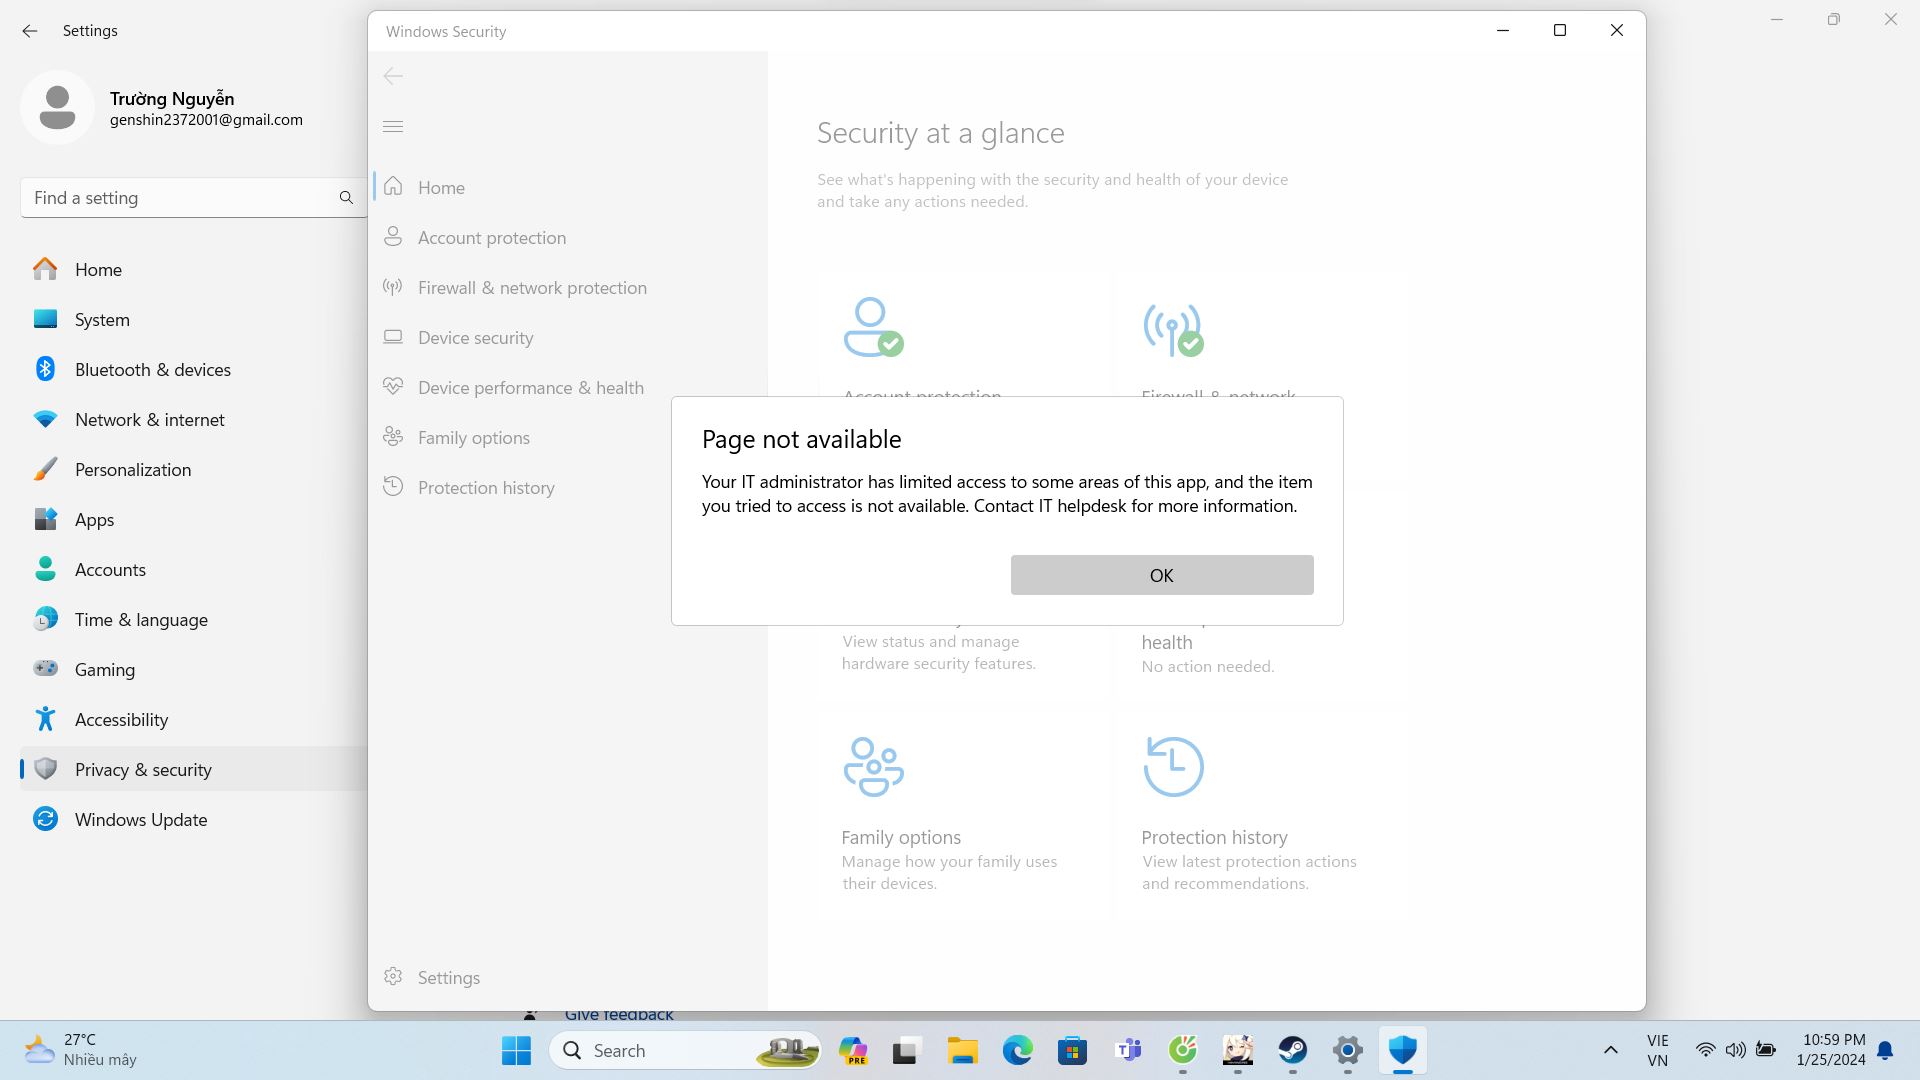 Mình muốn tìm hiểu thêm các bước tắt Windows Security , tại hiện giờ mình không thể tải Windows Defende được 